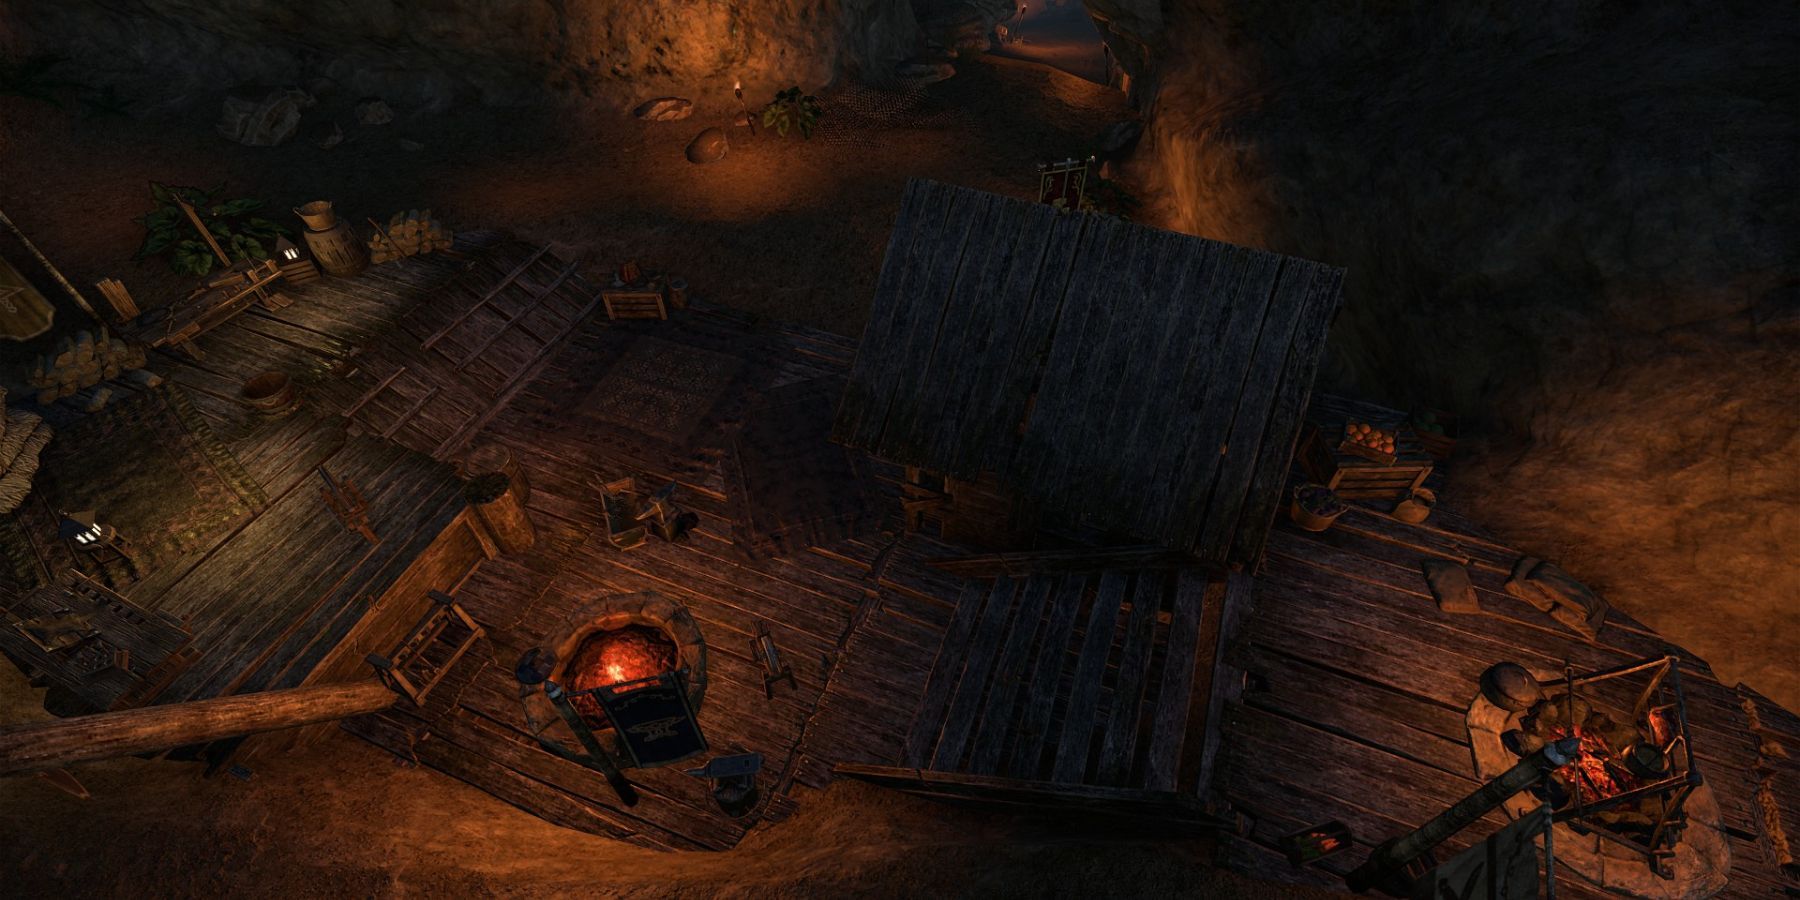 Elder Scrolls Online High Isle Druids Braid Armor Set Guide Crafting Location